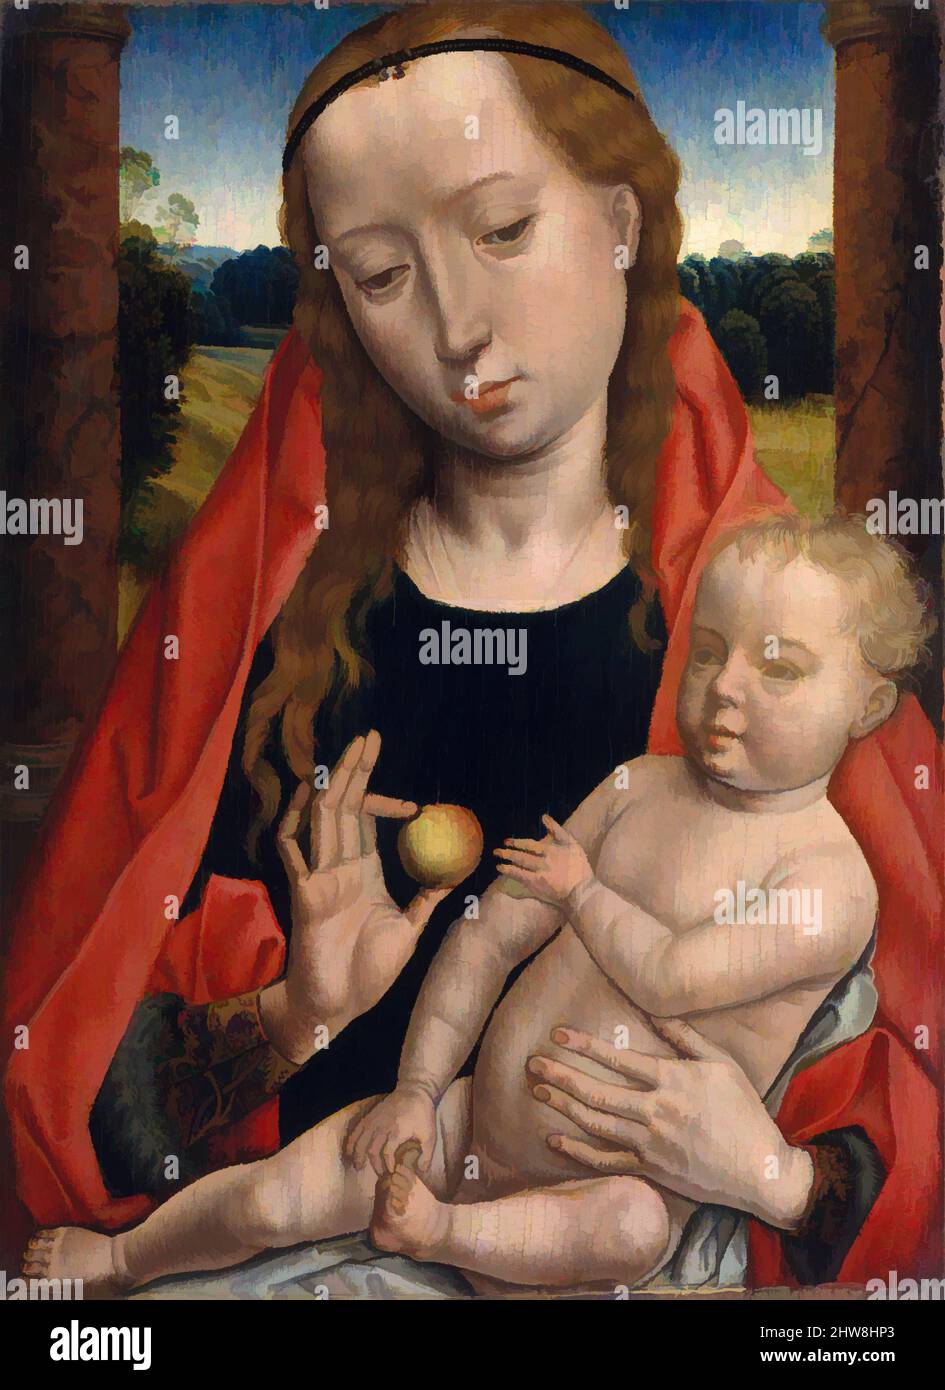 Arte ispirata da Vergine e Bambino, ca. 1490, olio su legno, totale 10 3/4 x 8 1/4 poll. (27,3 x 21 cm); superficie verniciata 9 x 6 5/8 poll. (22,9 x 16,8 cm), dipinti, laboratorio di Hans Memling (Netherlandish, Seligenstadt, attivo dal 1465-morto 1494 Bruges), questa foto era molto probabilmente le, opere classiche modernizzate da Artotop con un tuffo di modernità. Forme, colore e valore, impatto visivo accattivante sulle emozioni artistiche attraverso la libertà delle opere d'arte in modo contemporaneo. Un messaggio senza tempo che persegue una nuova direzione selvaggiamente creativa. Artisti che si rivolgono al supporto digitale e creano l'NFT Artotop Foto Stock